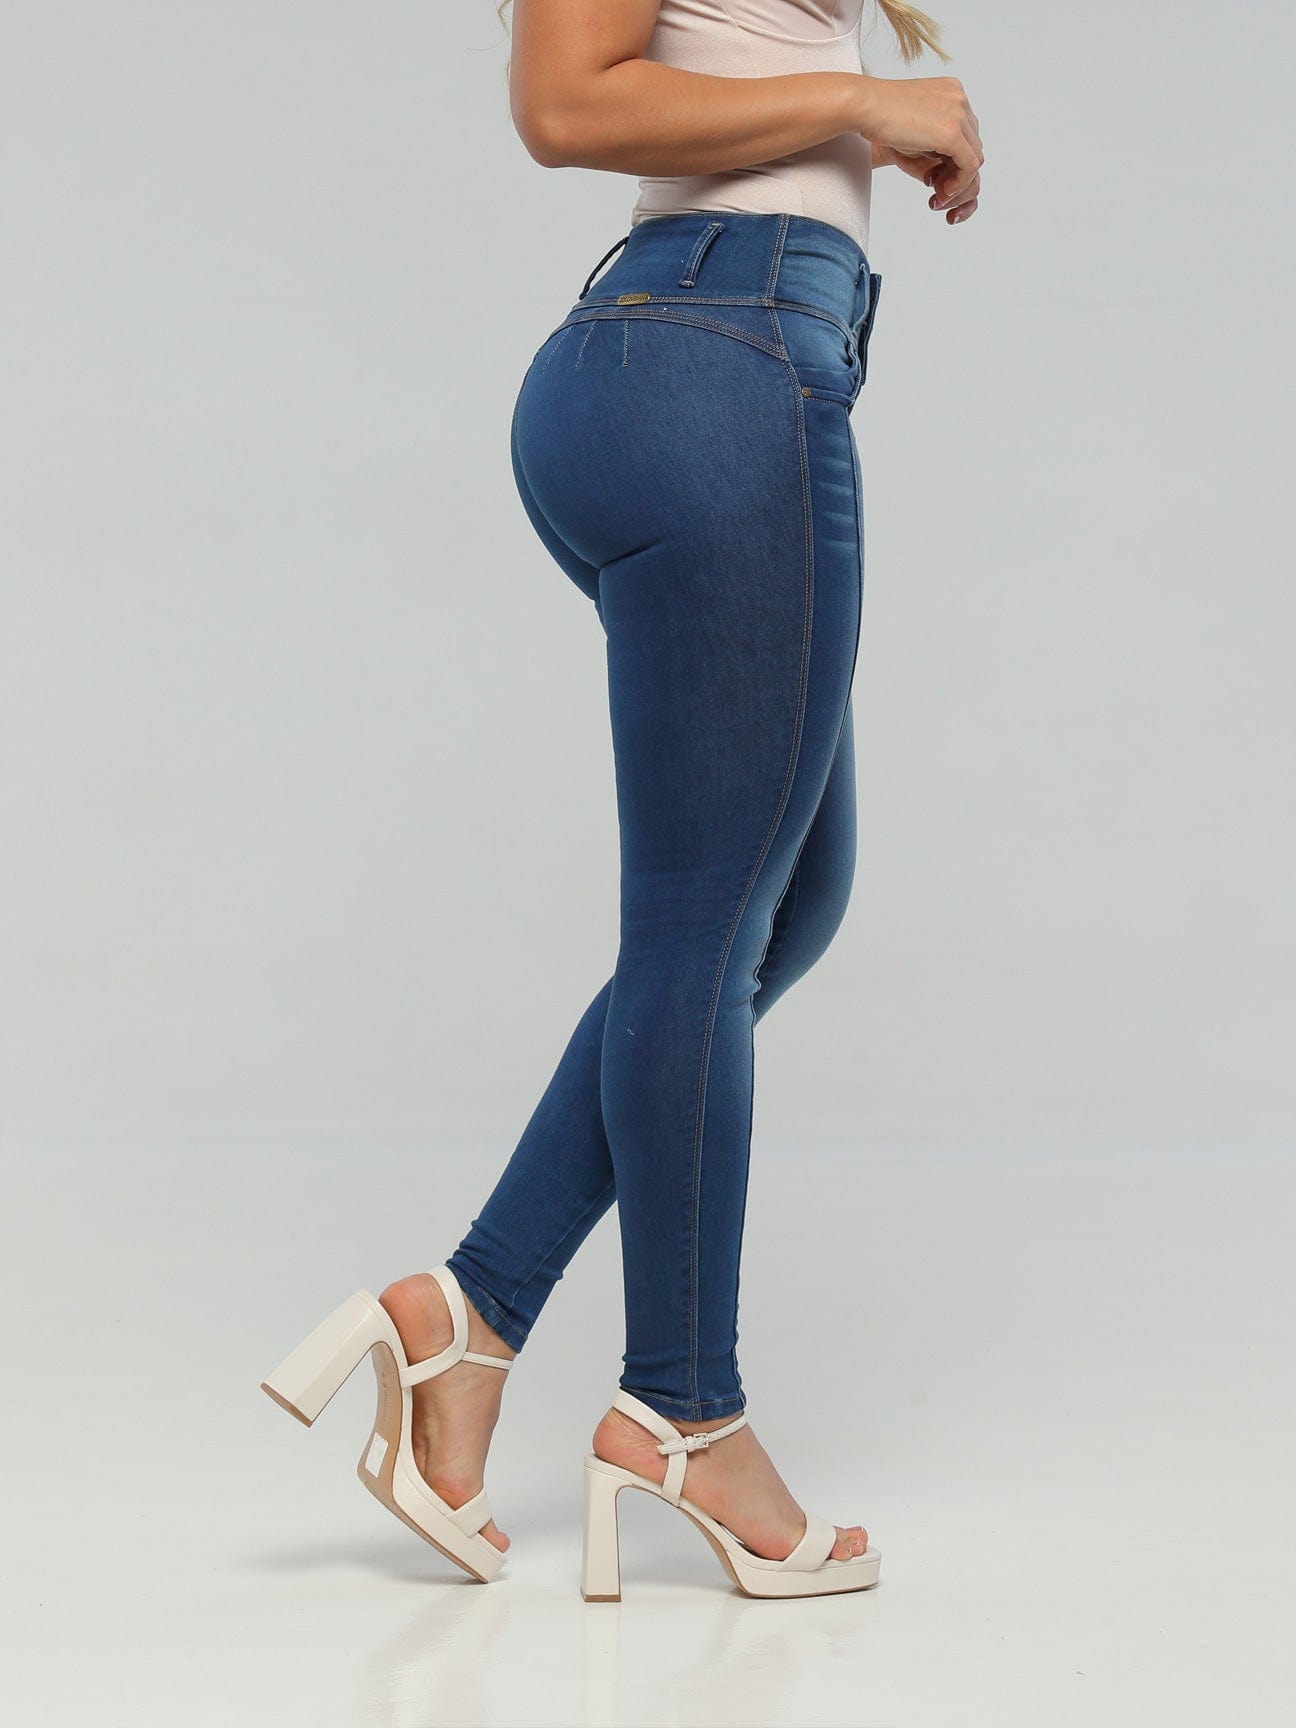 Jeans con levantamiento de glúteos CB1054 